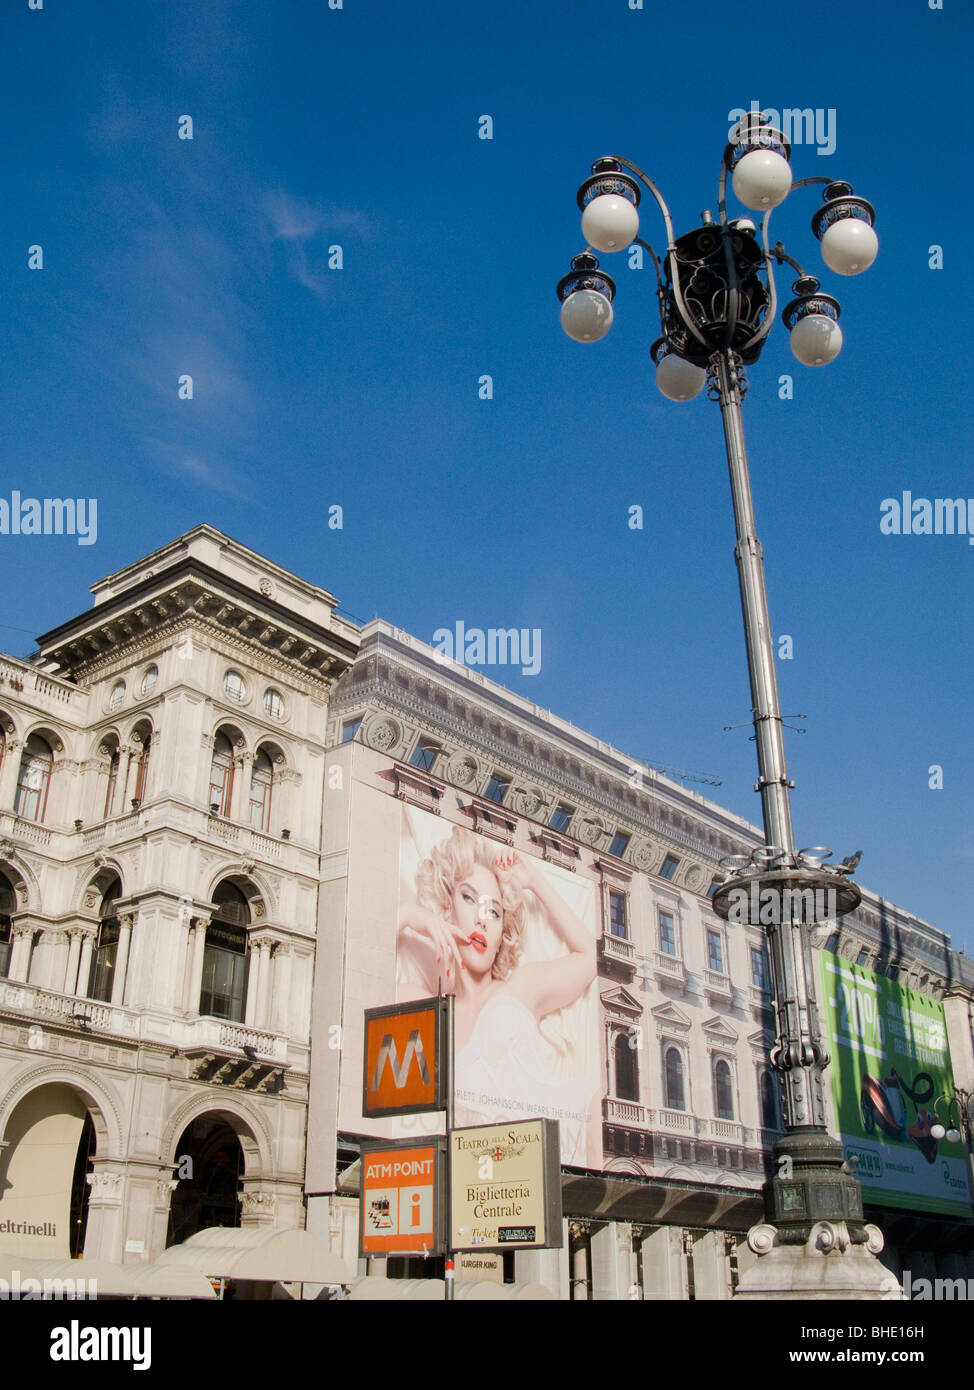 piazza del duomo, milan, lombardia, italy Stock Photo